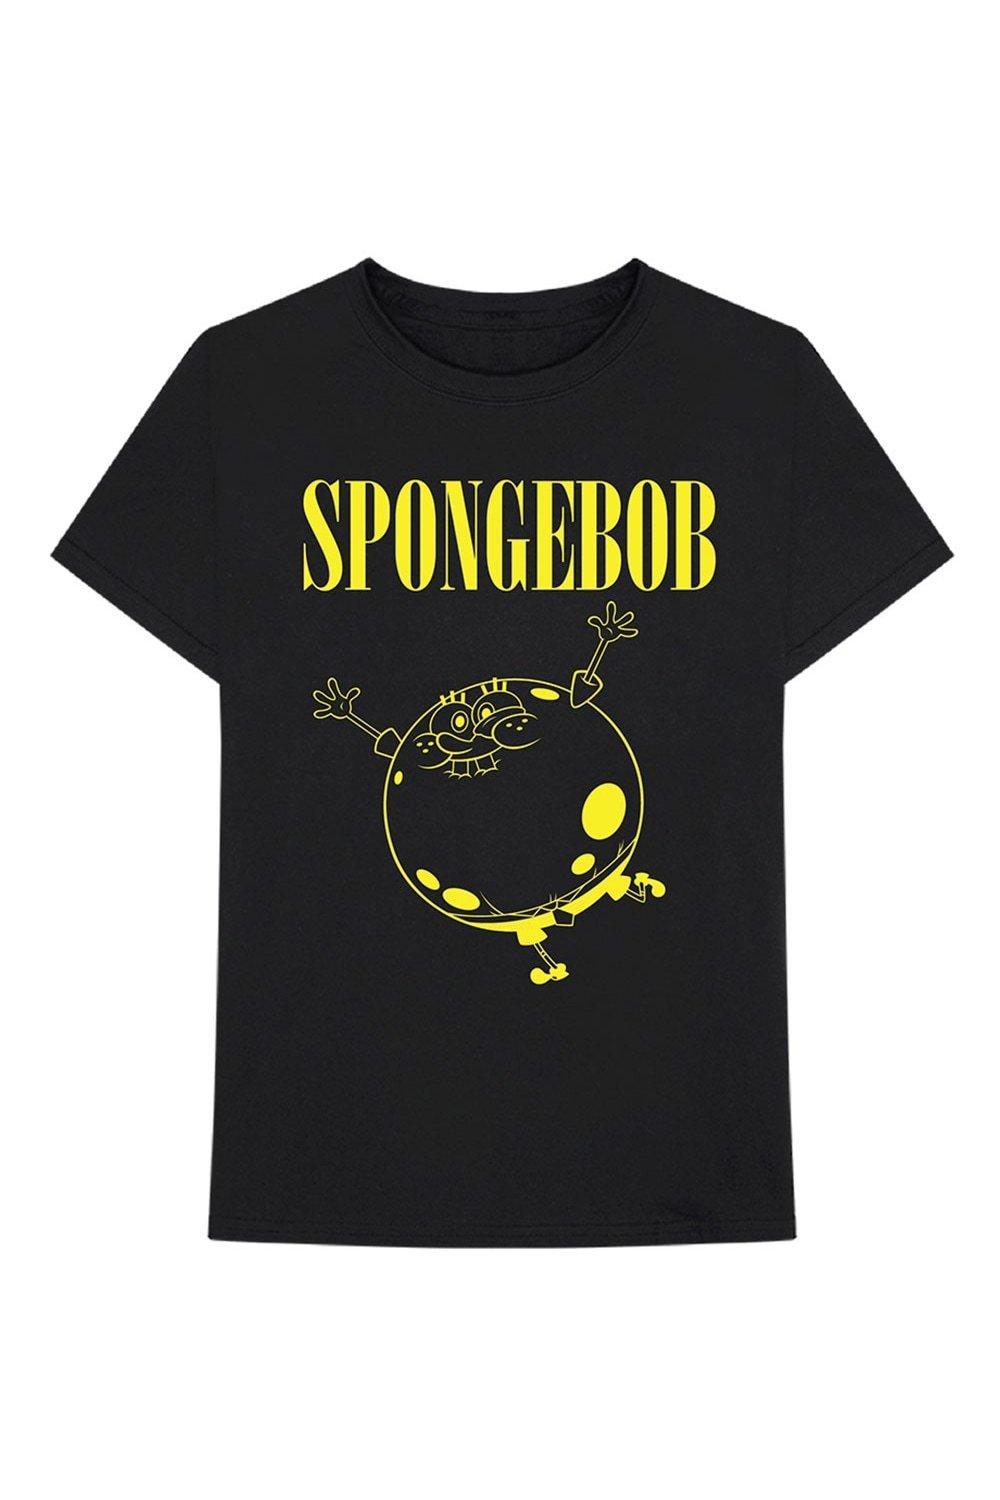 Хлопковая футболка SpongeBob SquarePants, черный губка боб квадратные штаны мультраскраска